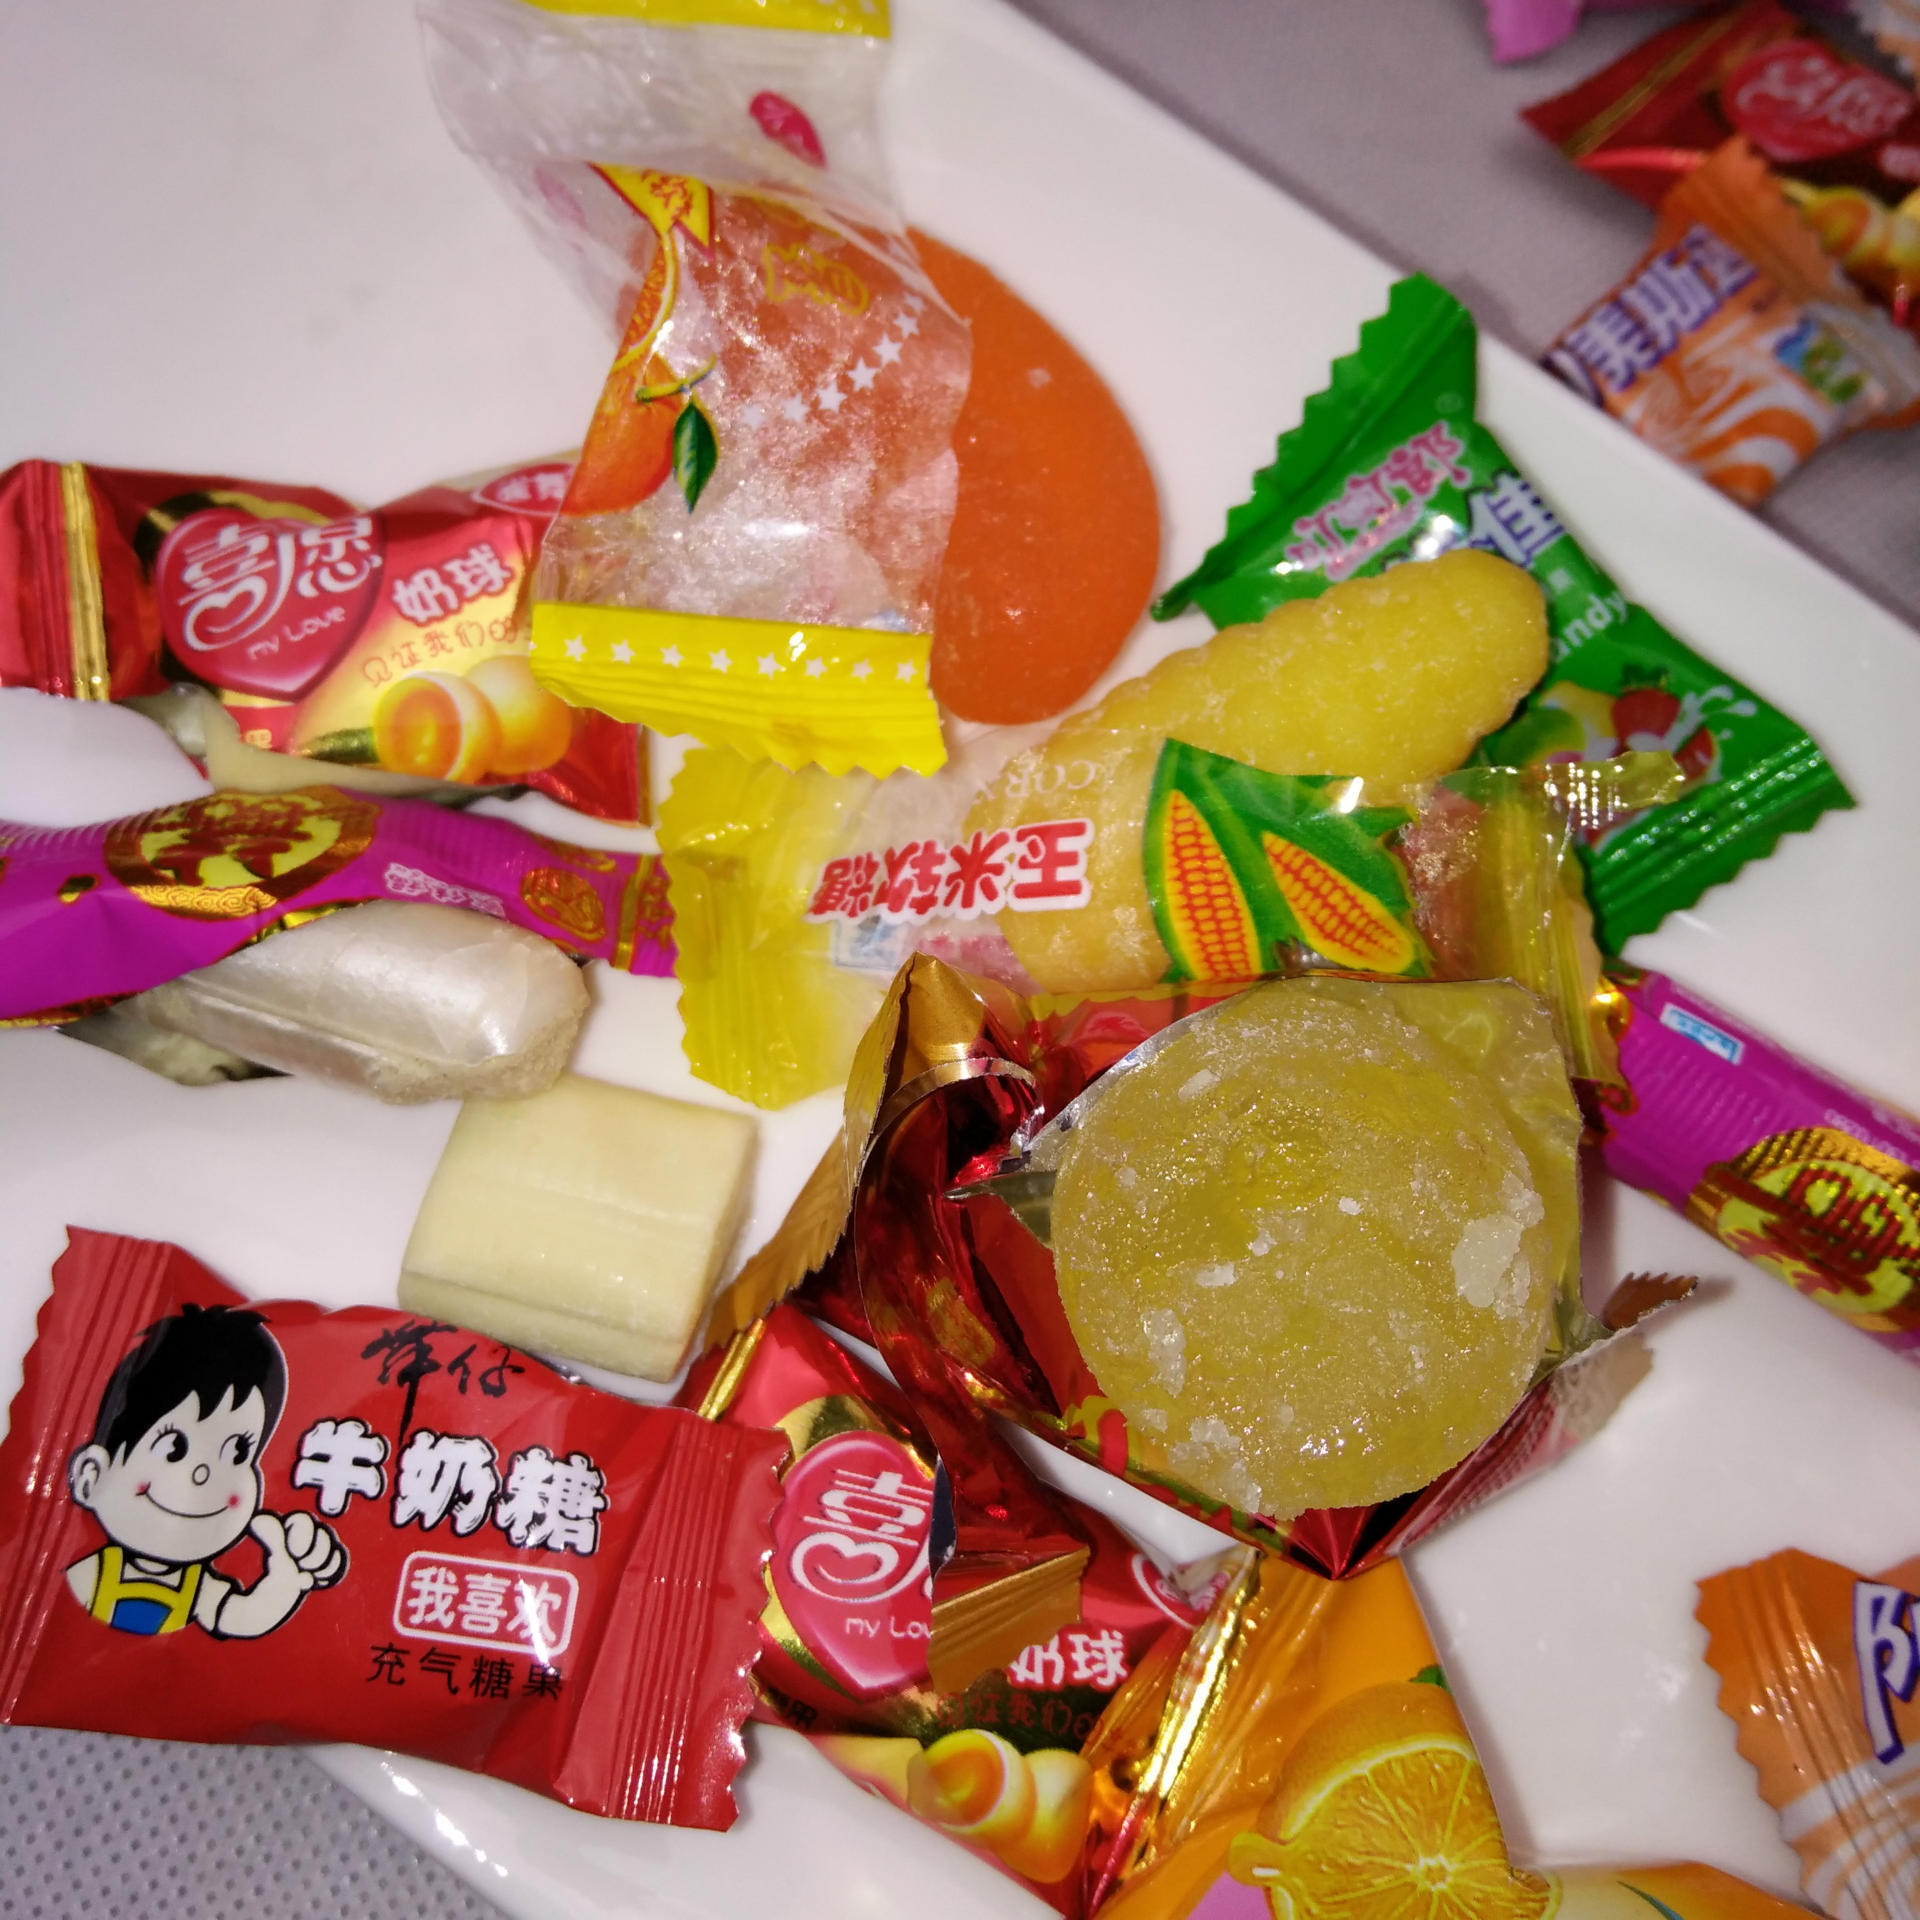 2018年 冬季年货热卖 各种 糖果 低价批发跑江湖热卖产品厂家直销